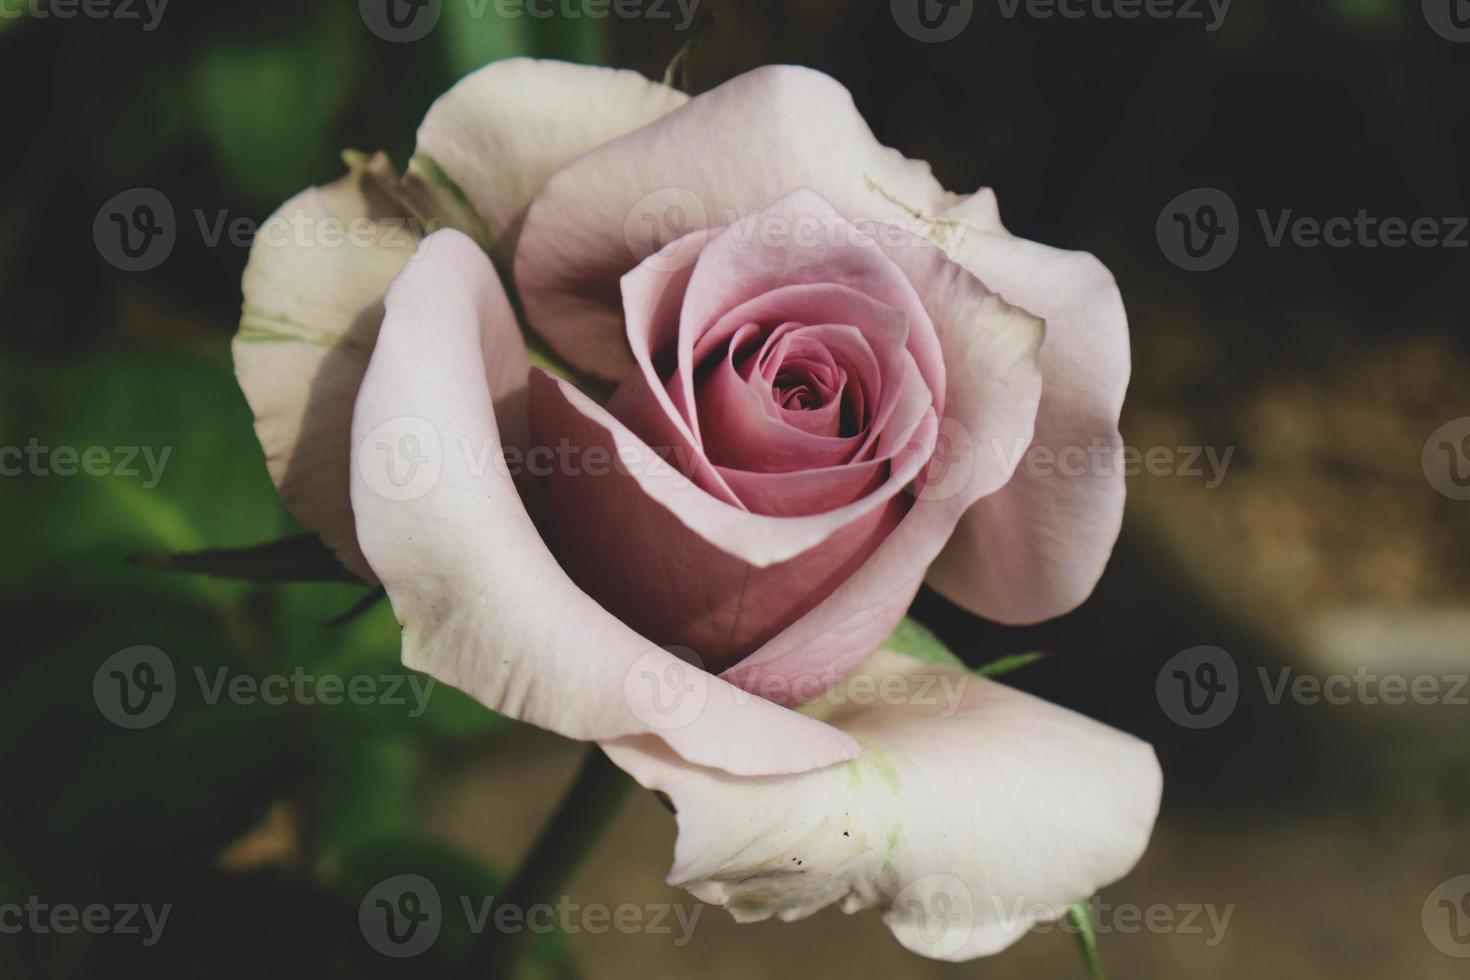 rosas roxas estão em flor. as rosas roxas representam charme, esplendor, magia e mistério, tornando o significado da cor desta rosa muito inspirador. foto